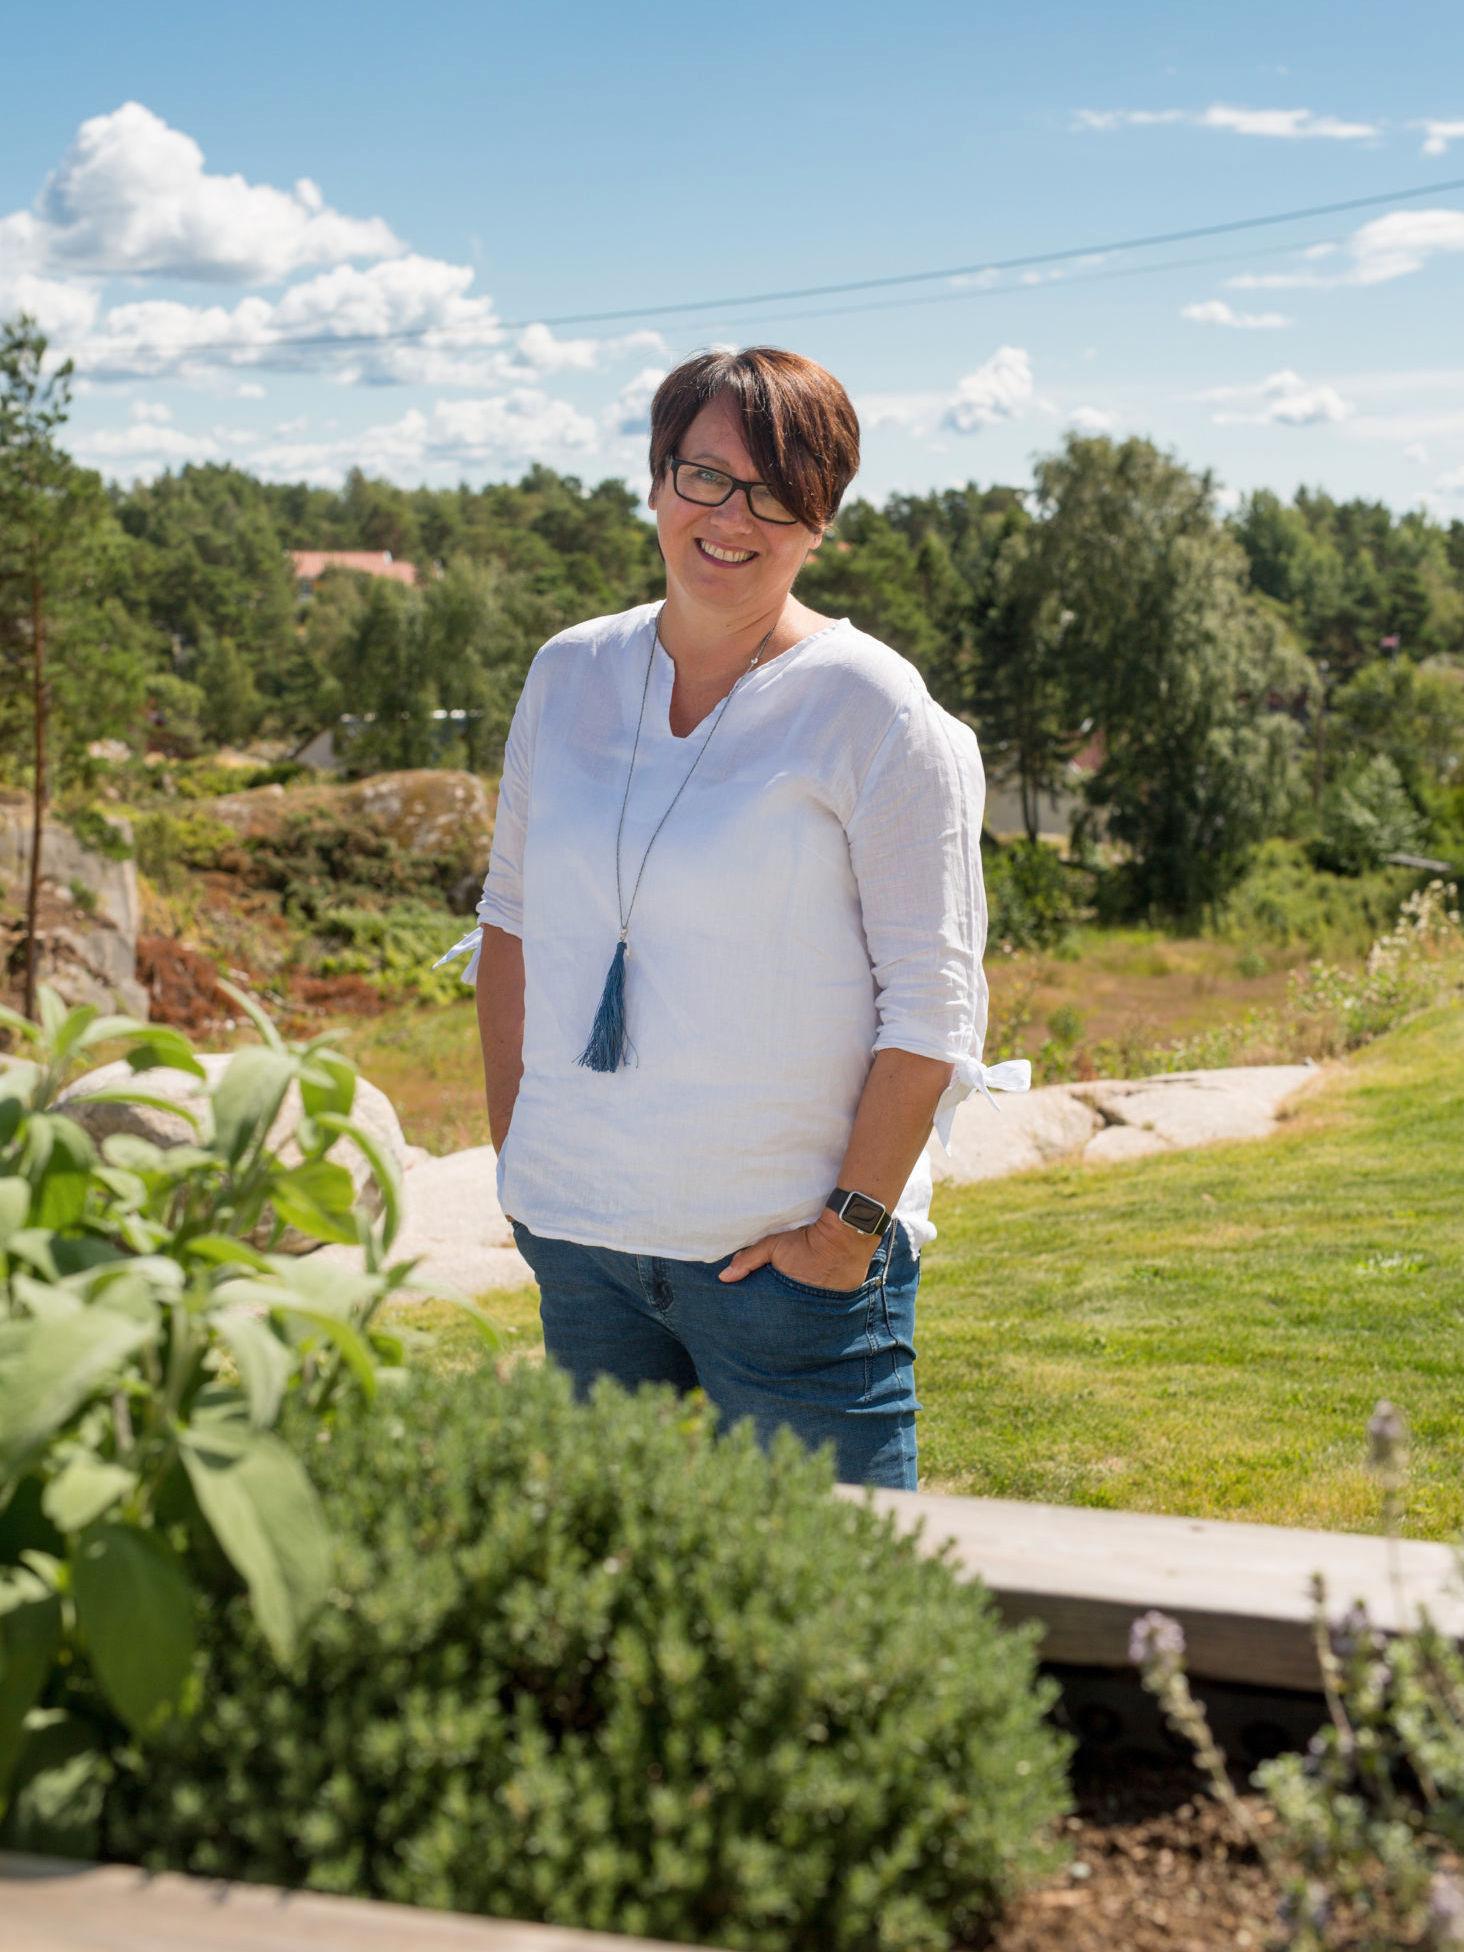 POPULÆR: Trine Sandberg er kåret til Norges meste matblogger flere ganger. Her avbildet ved hytta si. Foto: Brian Cliff Olguin/VG